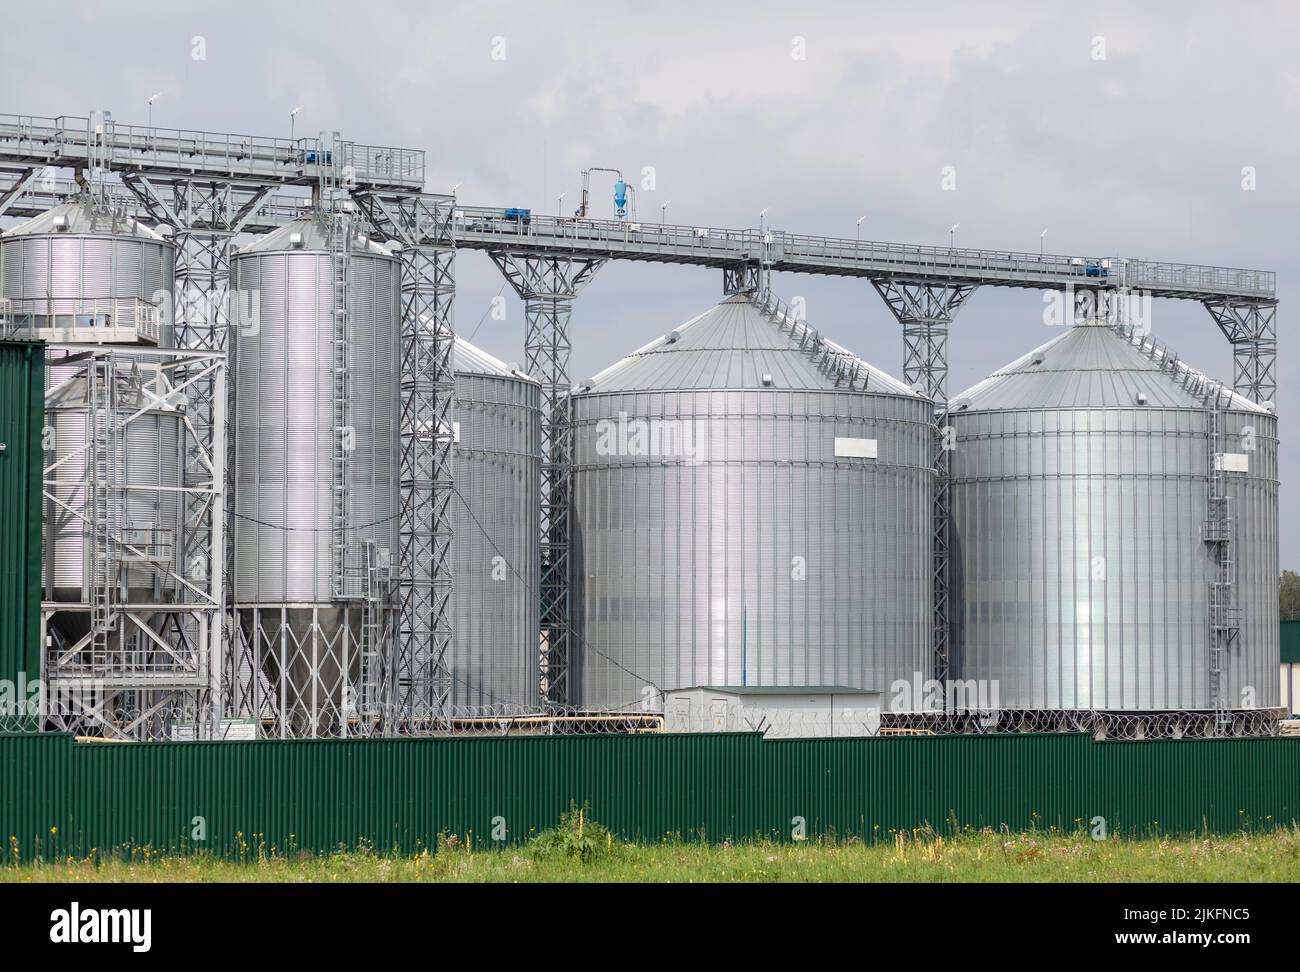 Moderne große Getreidespeicher Agro-Silos Aufzug auf Agro-Verarbeitungsanlage für die Verarbeitung Trocknung Reinigung und Lagerung von landwirtschaftlichen Produkten, f Stockfoto